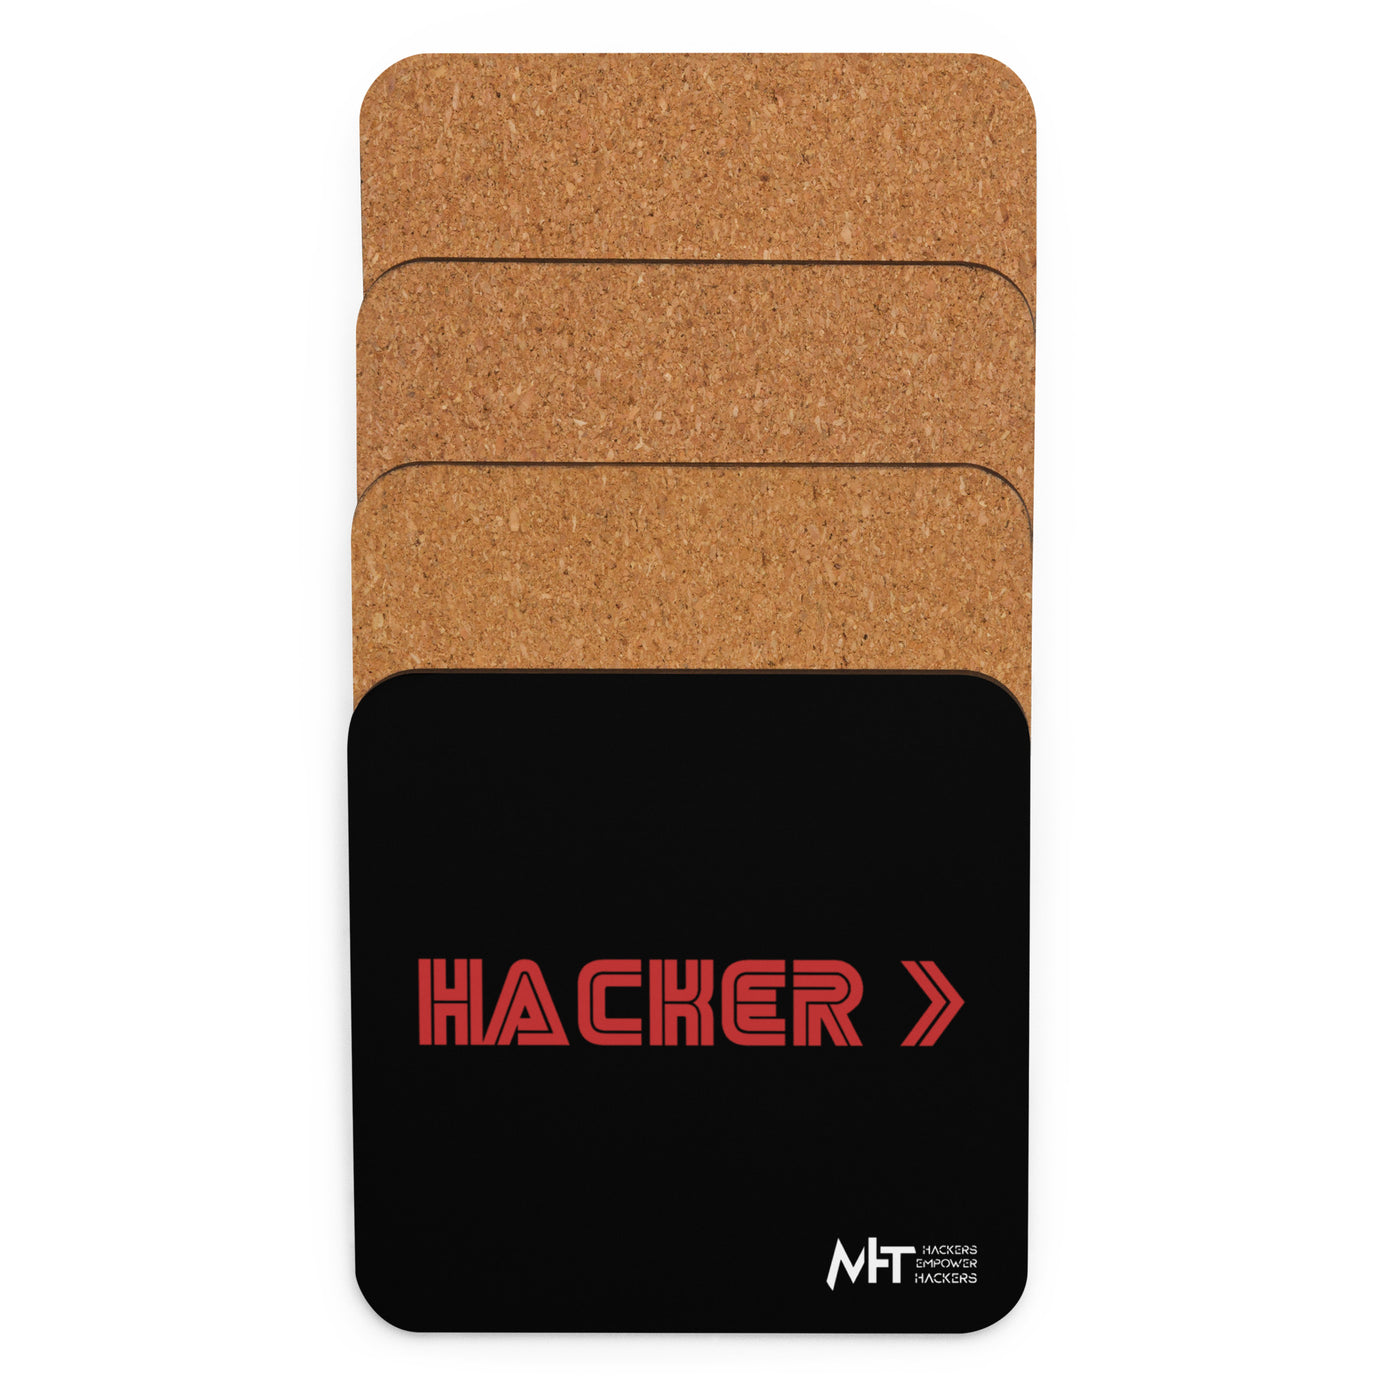 Hacker v3 - Cork-back coaster